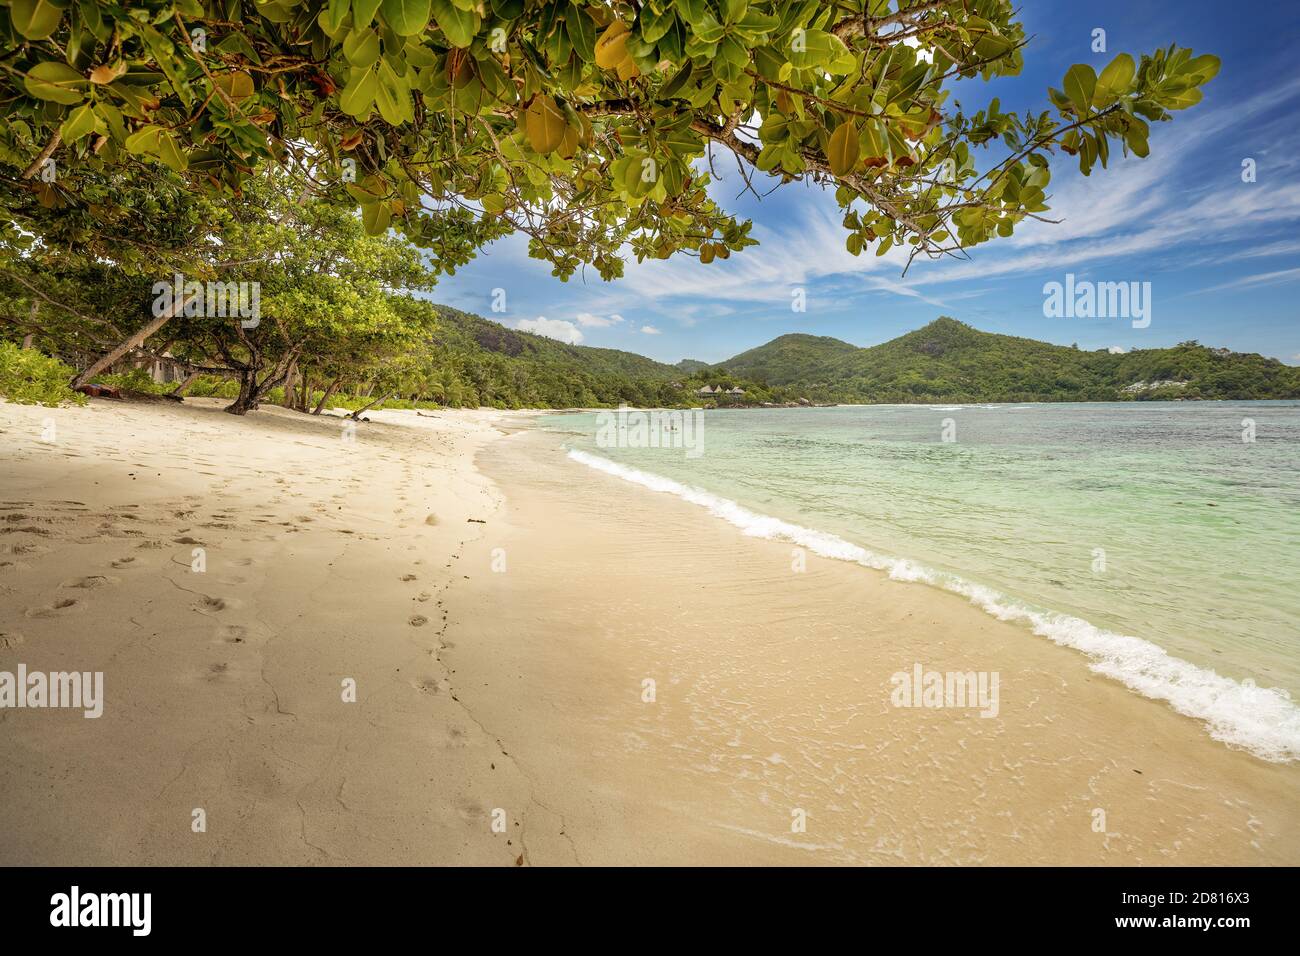 Plage de palmiers de sable de corail tropical célèbre Baie Lazare, Seychelles, île de Mahé, océan Indien. Plage de sable de corail et végétation luxuriante. Un touriste céleste de Banque D'Images